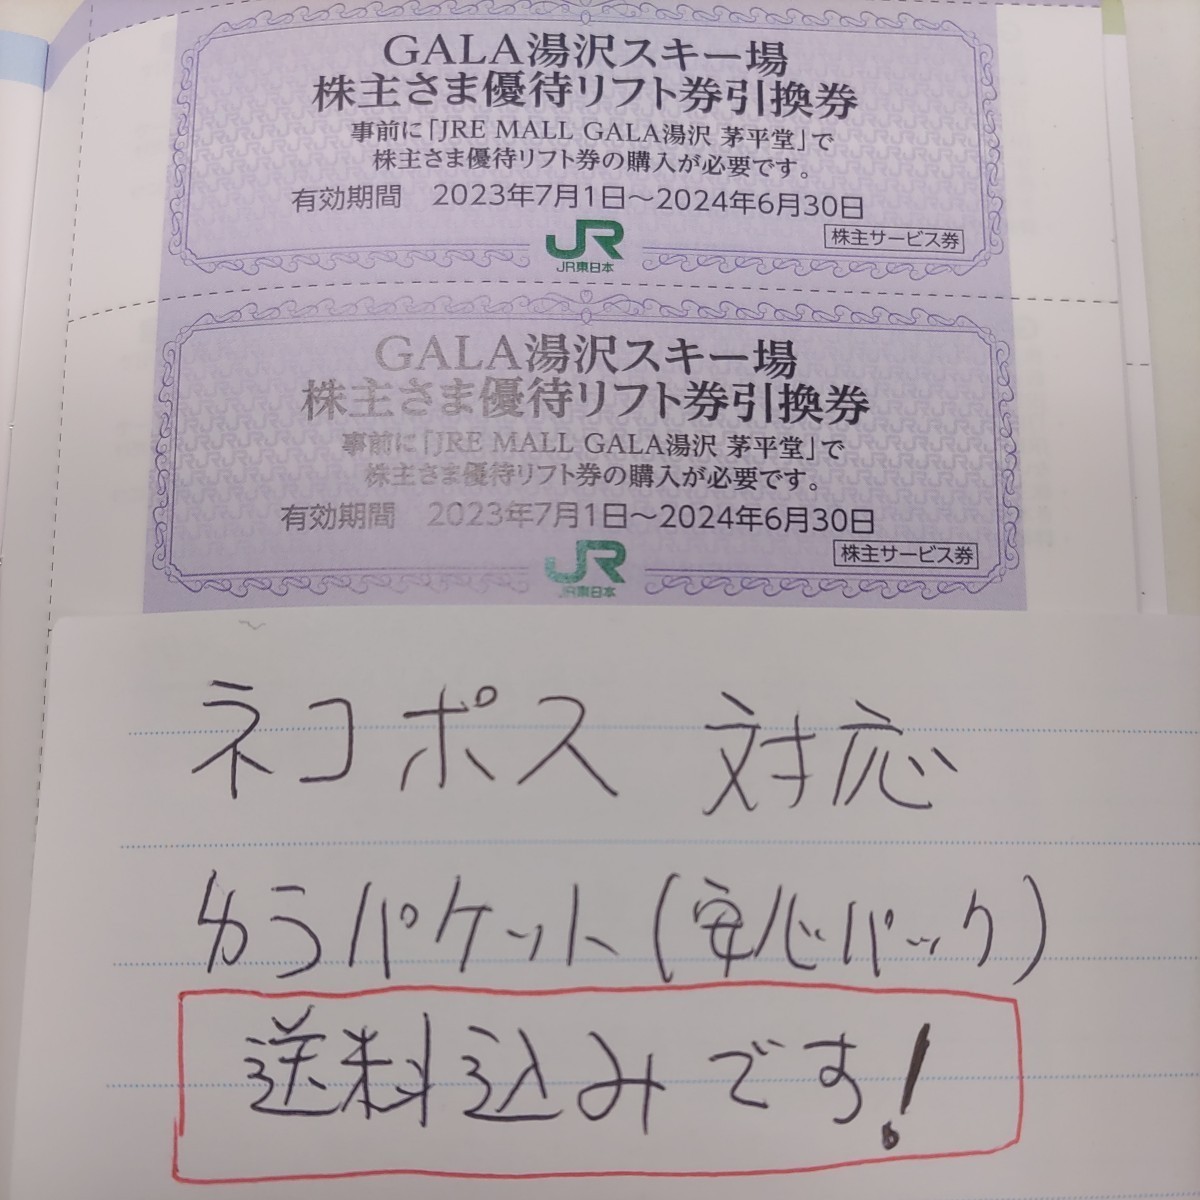 30 штук хорошо! Гала Юзава Лифт 20%скидка купона на восточное купон JR 250 иен (включая совместимую с кошачьей доставкой) также выставлены другие. В тот же день